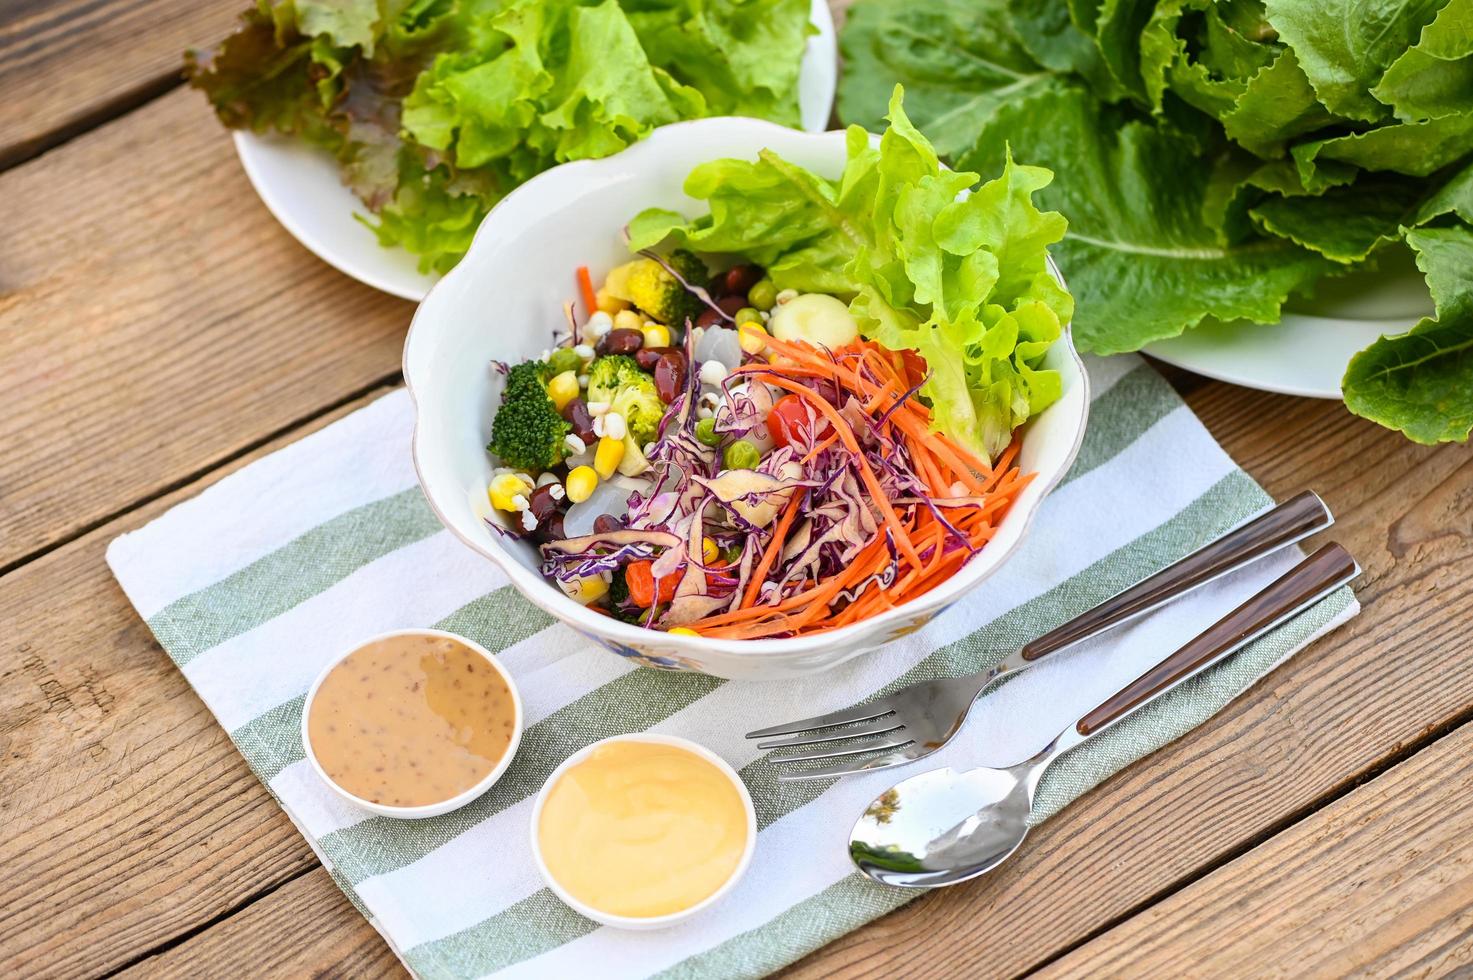 thaïlandais nourriture légume salades sur salades bol avec salade pansement Frais légume fruit des noisettes et céréales pour en bonne santé nourriture mixte légume salade végétarien vert et coloré nourriture pour petit déjeuner photo